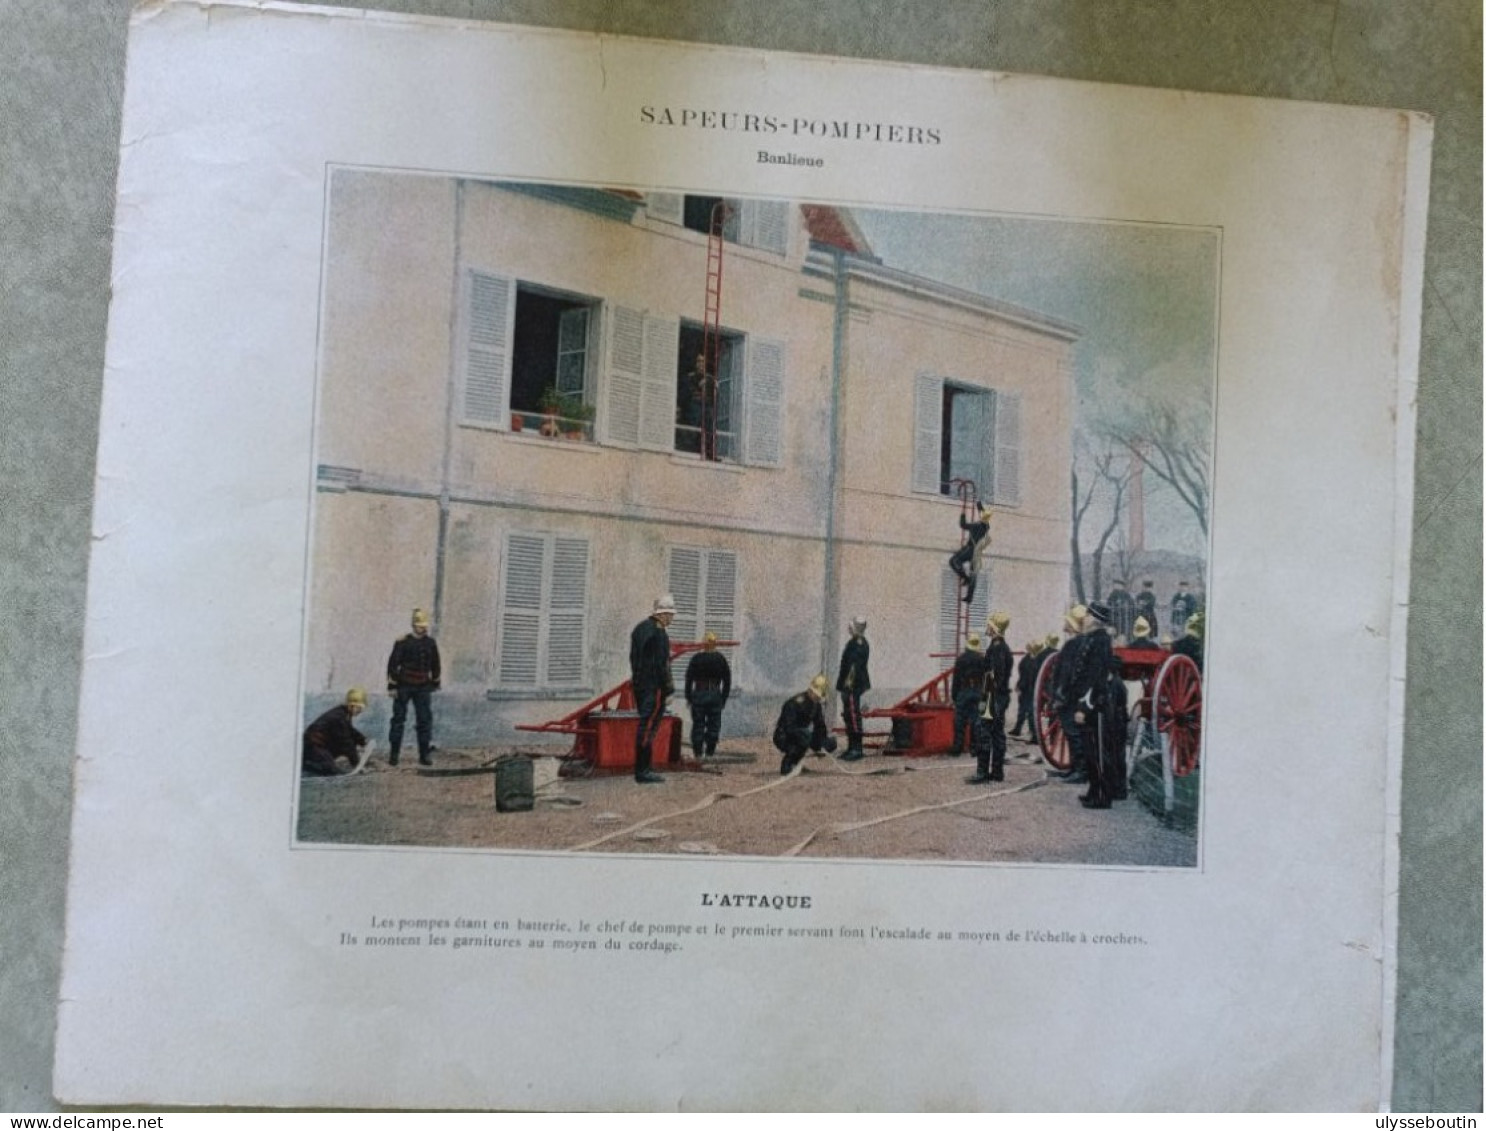 Album militaire sapeurs pompiers de Paris n'10